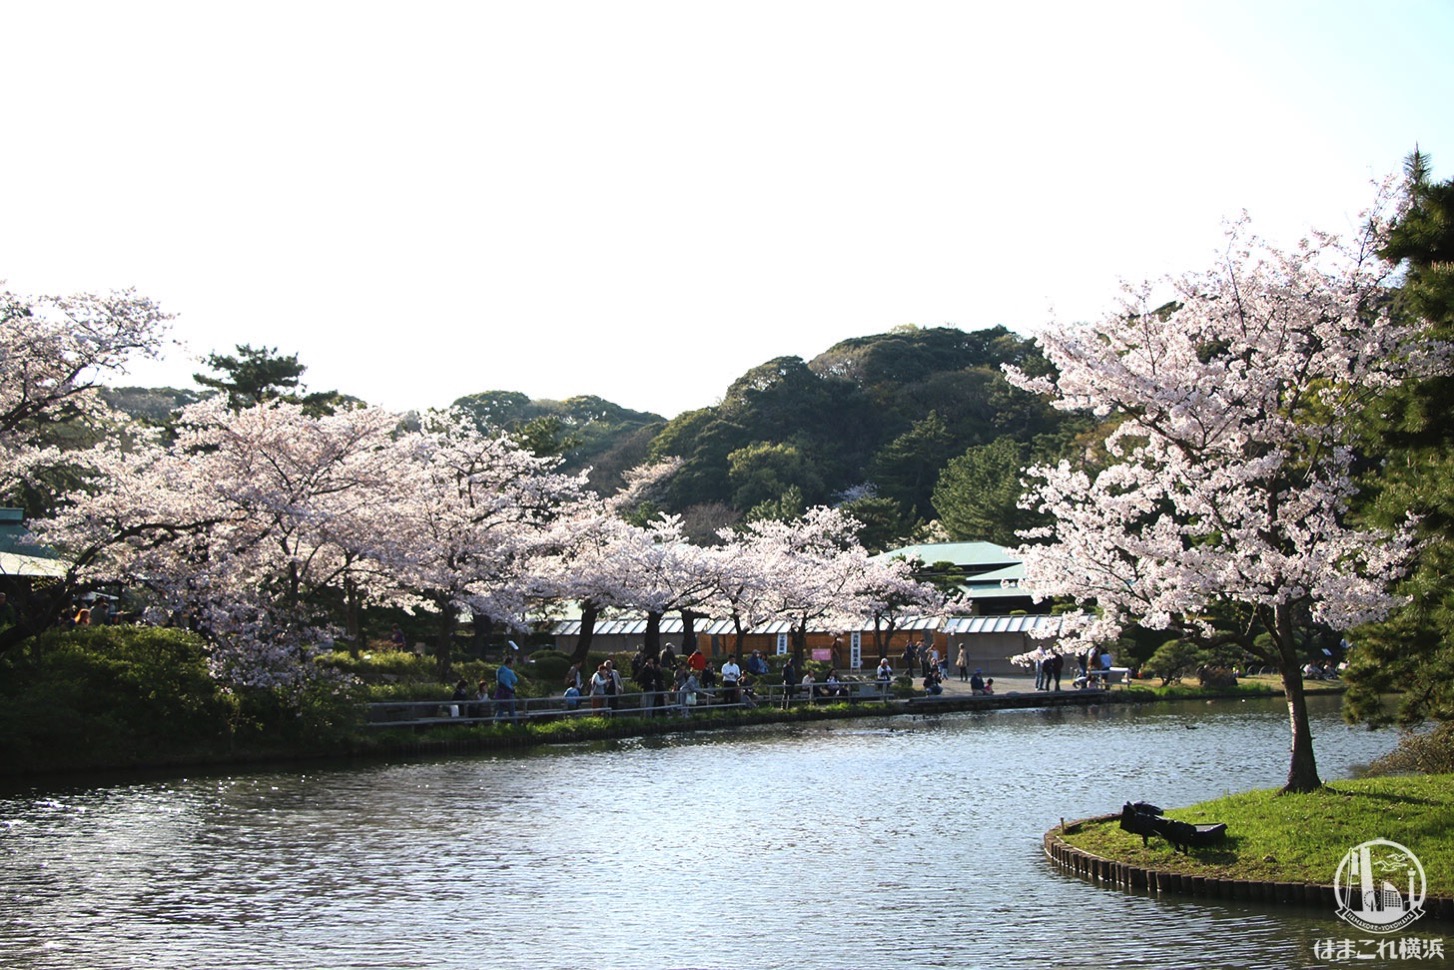 三渓園 池を囲み咲く桜